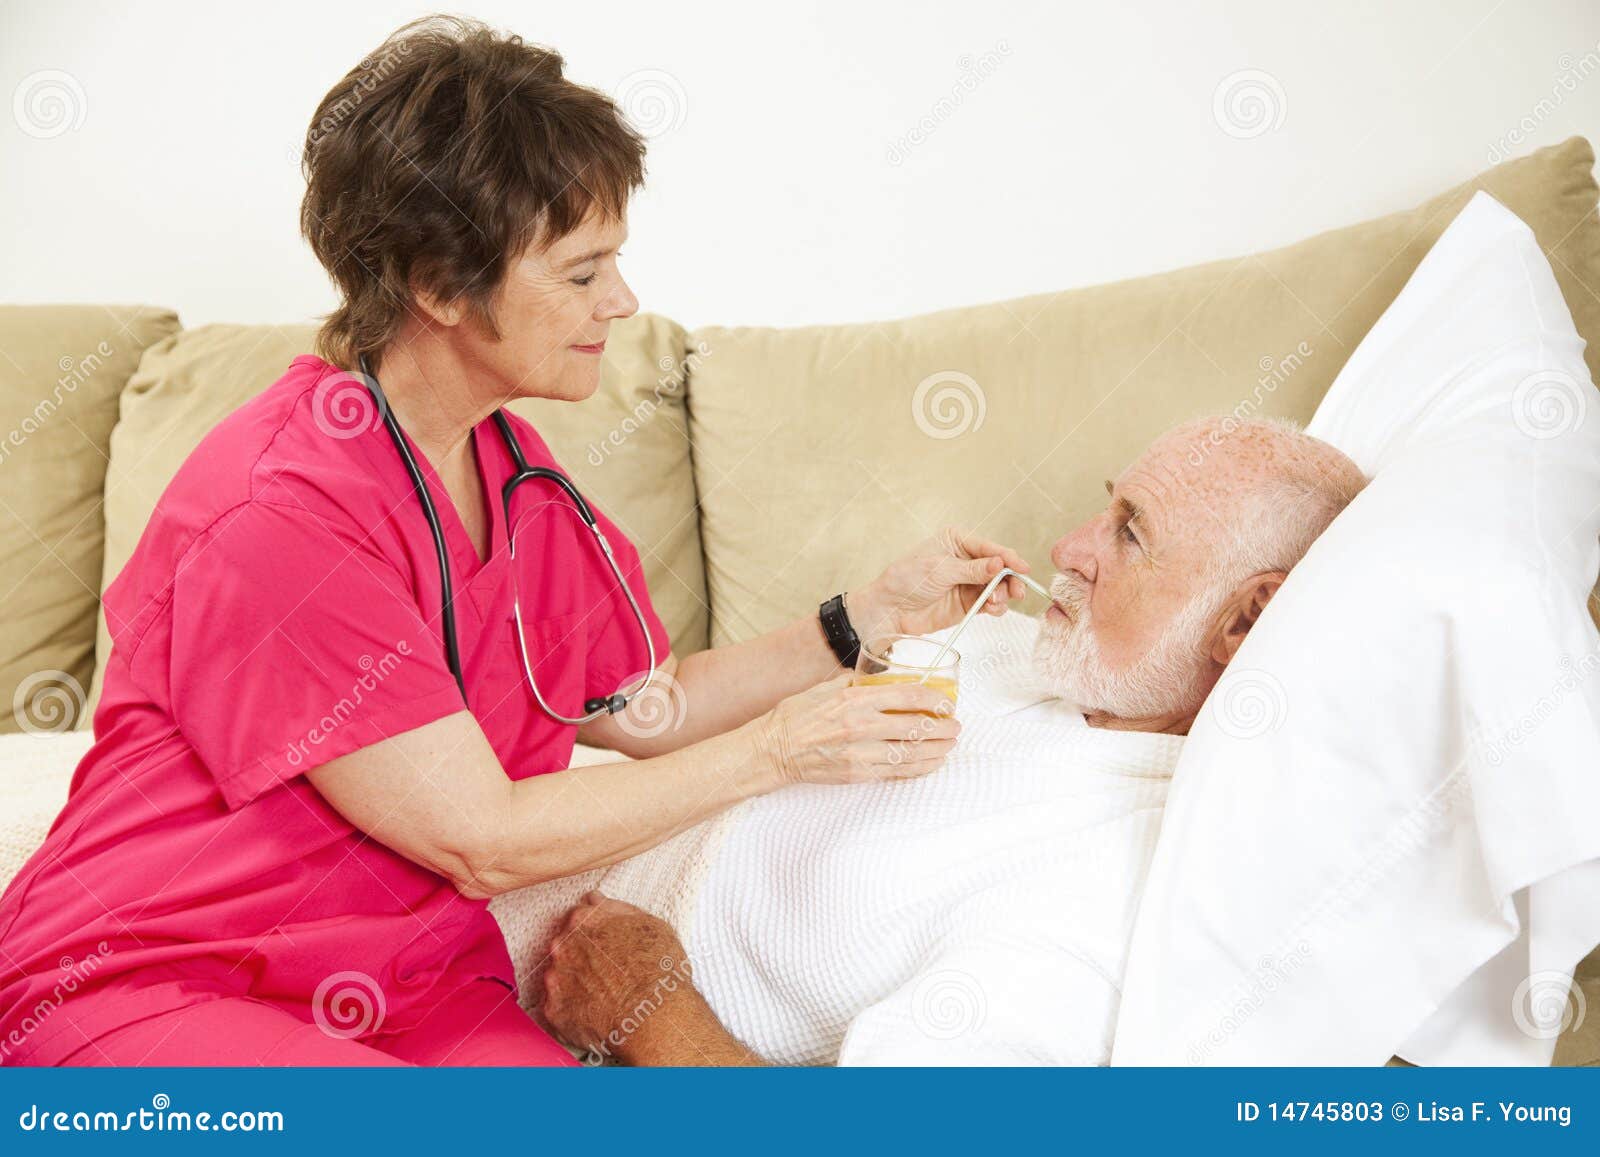 De Gezondheid van het huis - Vloeibare Opname. De verpleegster van het huis helpt bejaarde geduldige drank een glas jus d'orange.